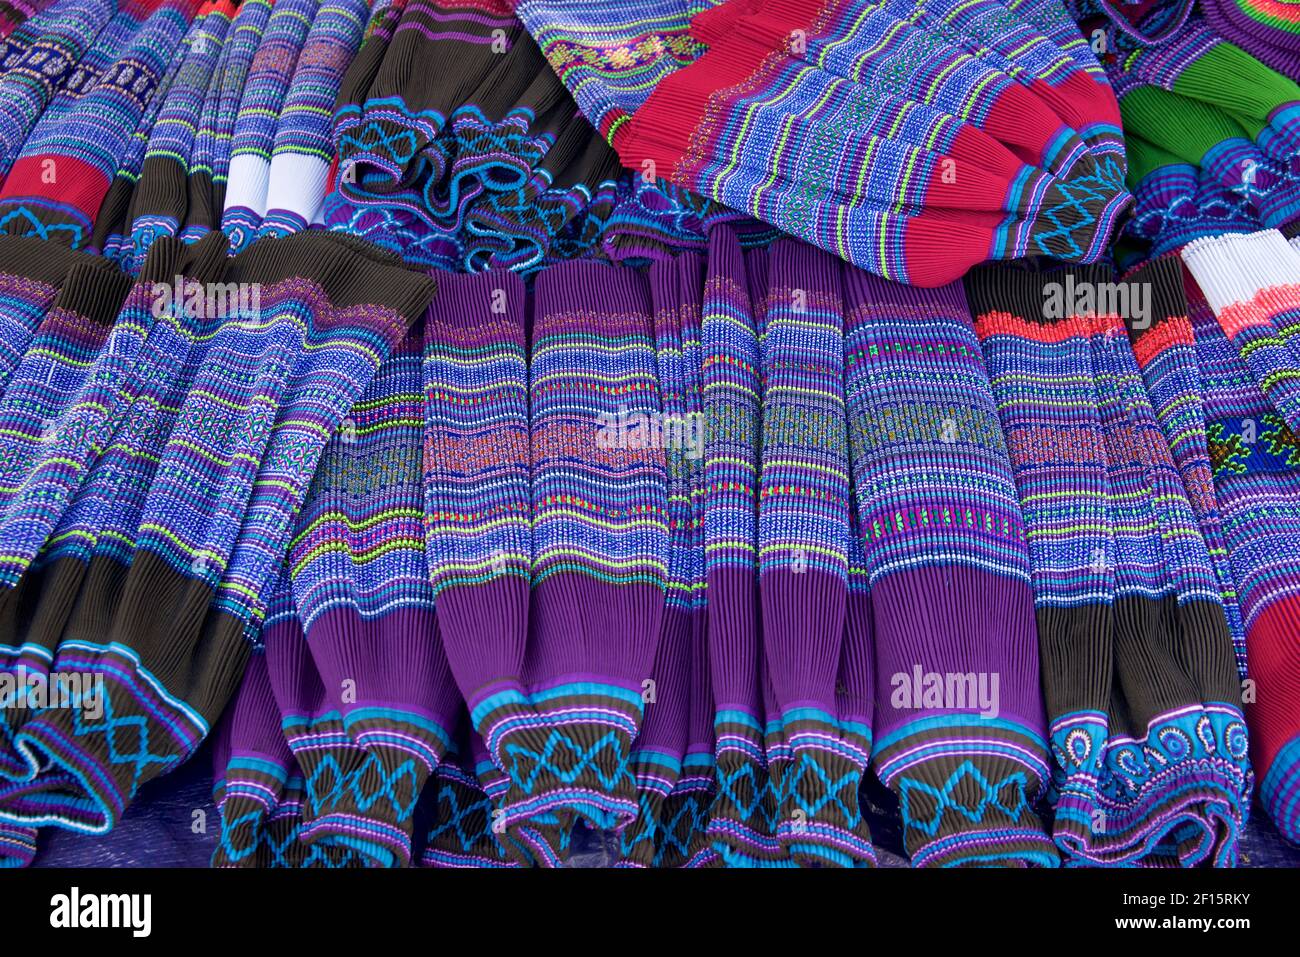 Hmong tissu jupe matériau - plissé et fait en jupes. Marché CAN Cau, province Lao Cai. Vietnam. Style similaire porté par les femmes Hmong en Thaïlande Banque D'Images